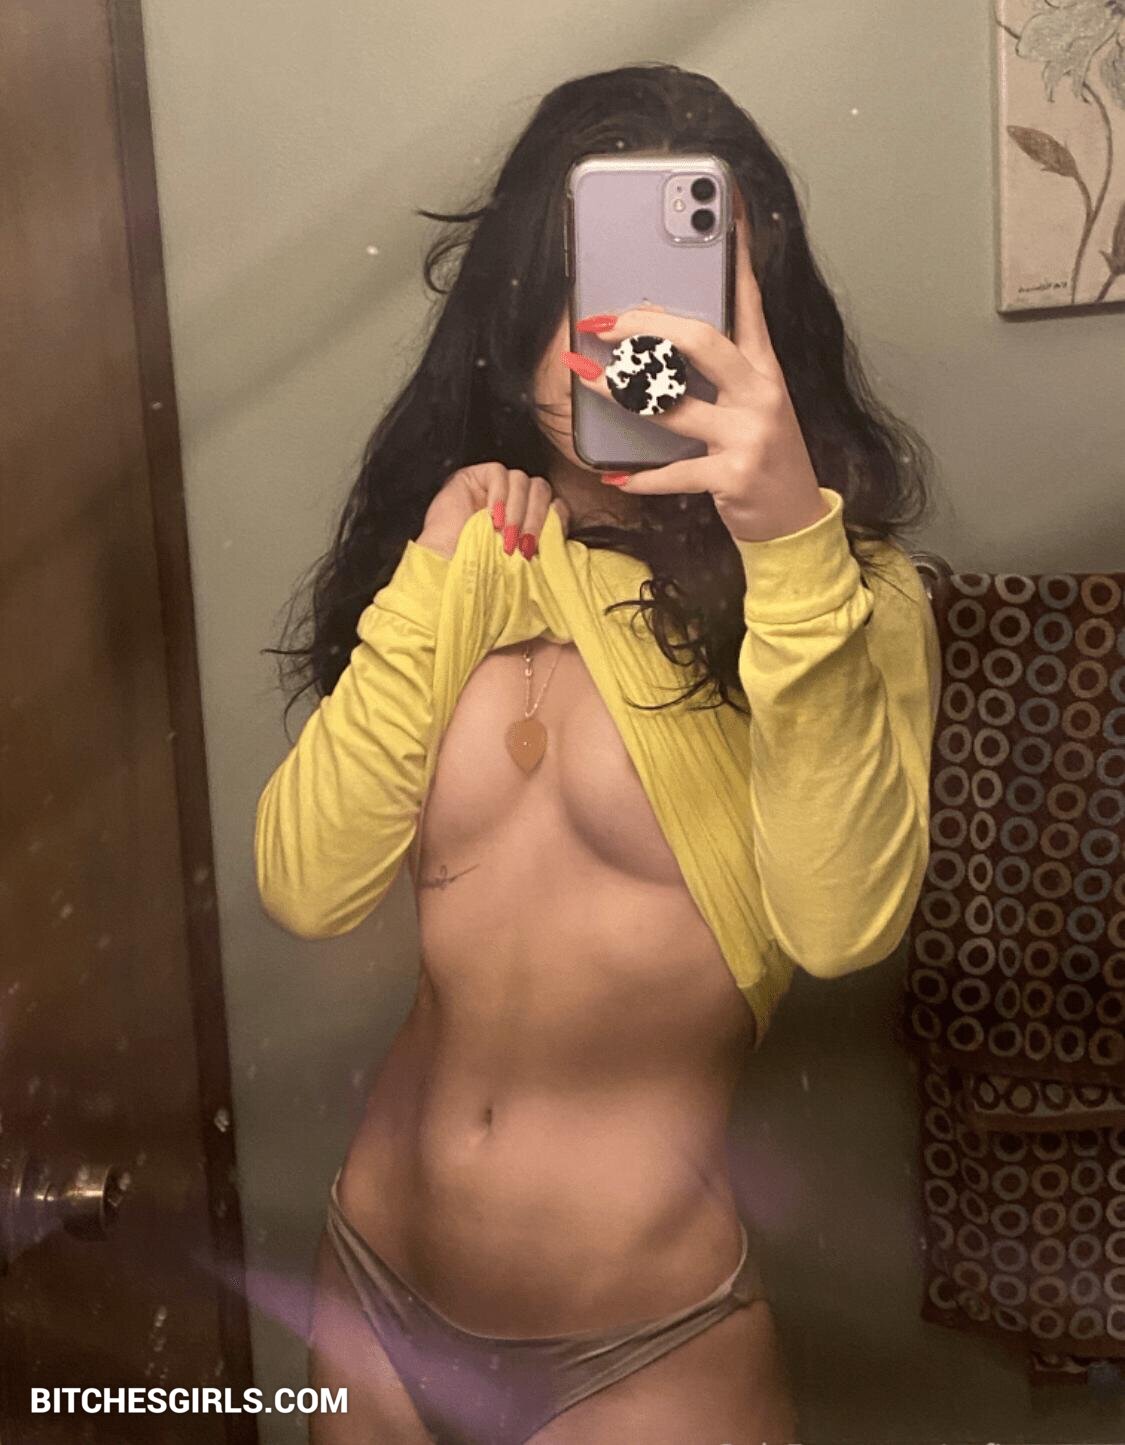 Sofia spams leaked nudes